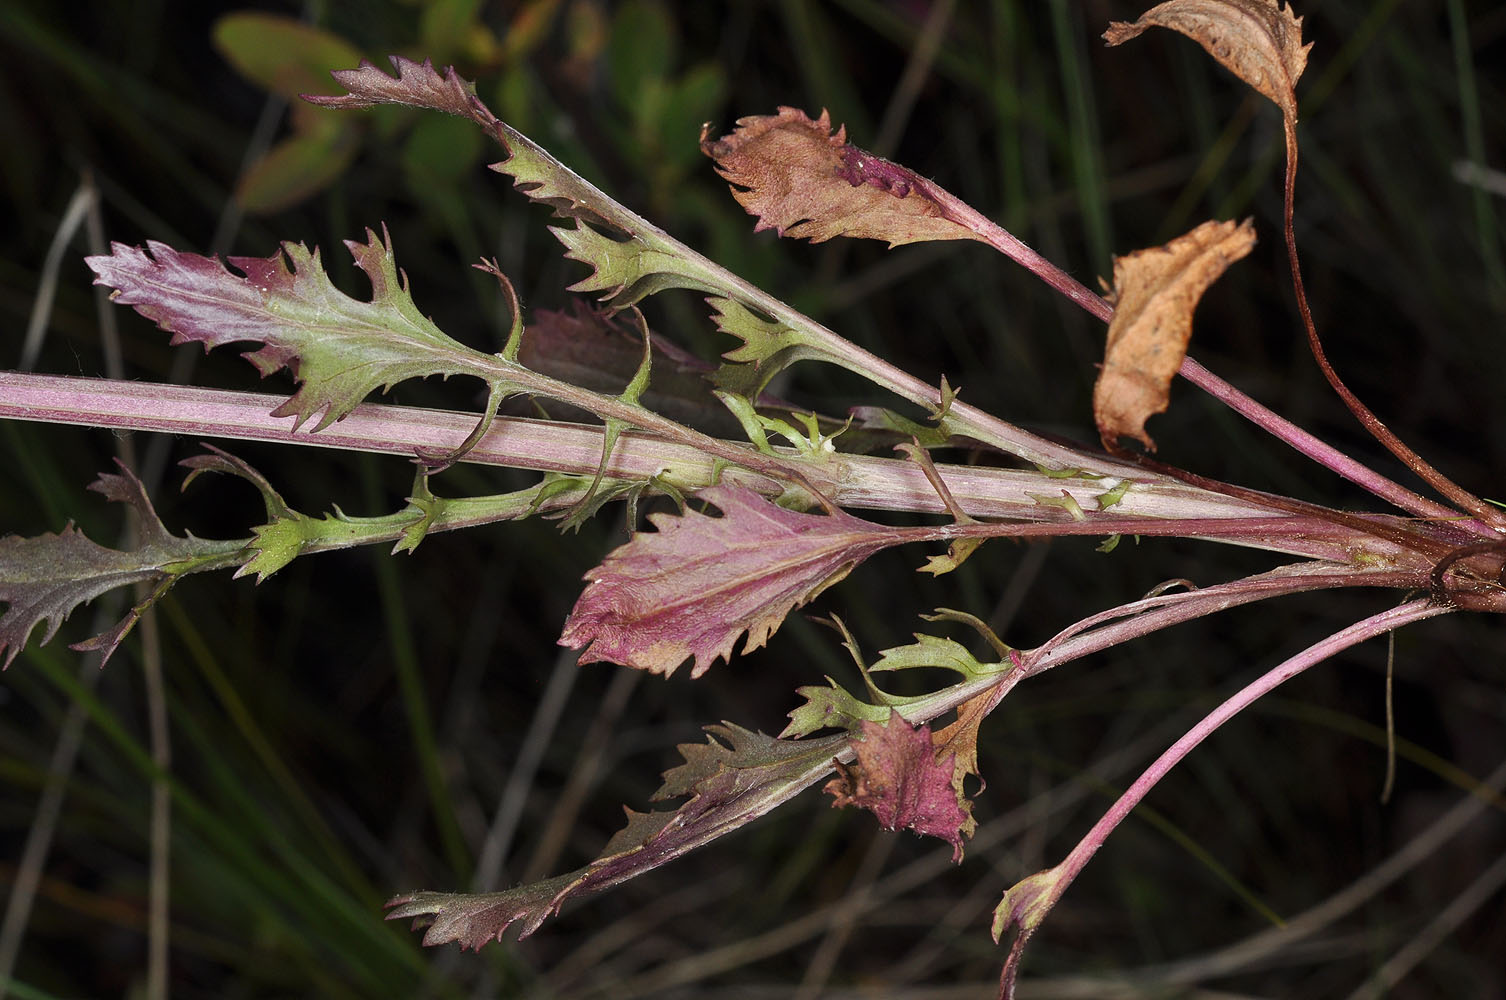 Flora of Eastern Washington Image: Packera indecora